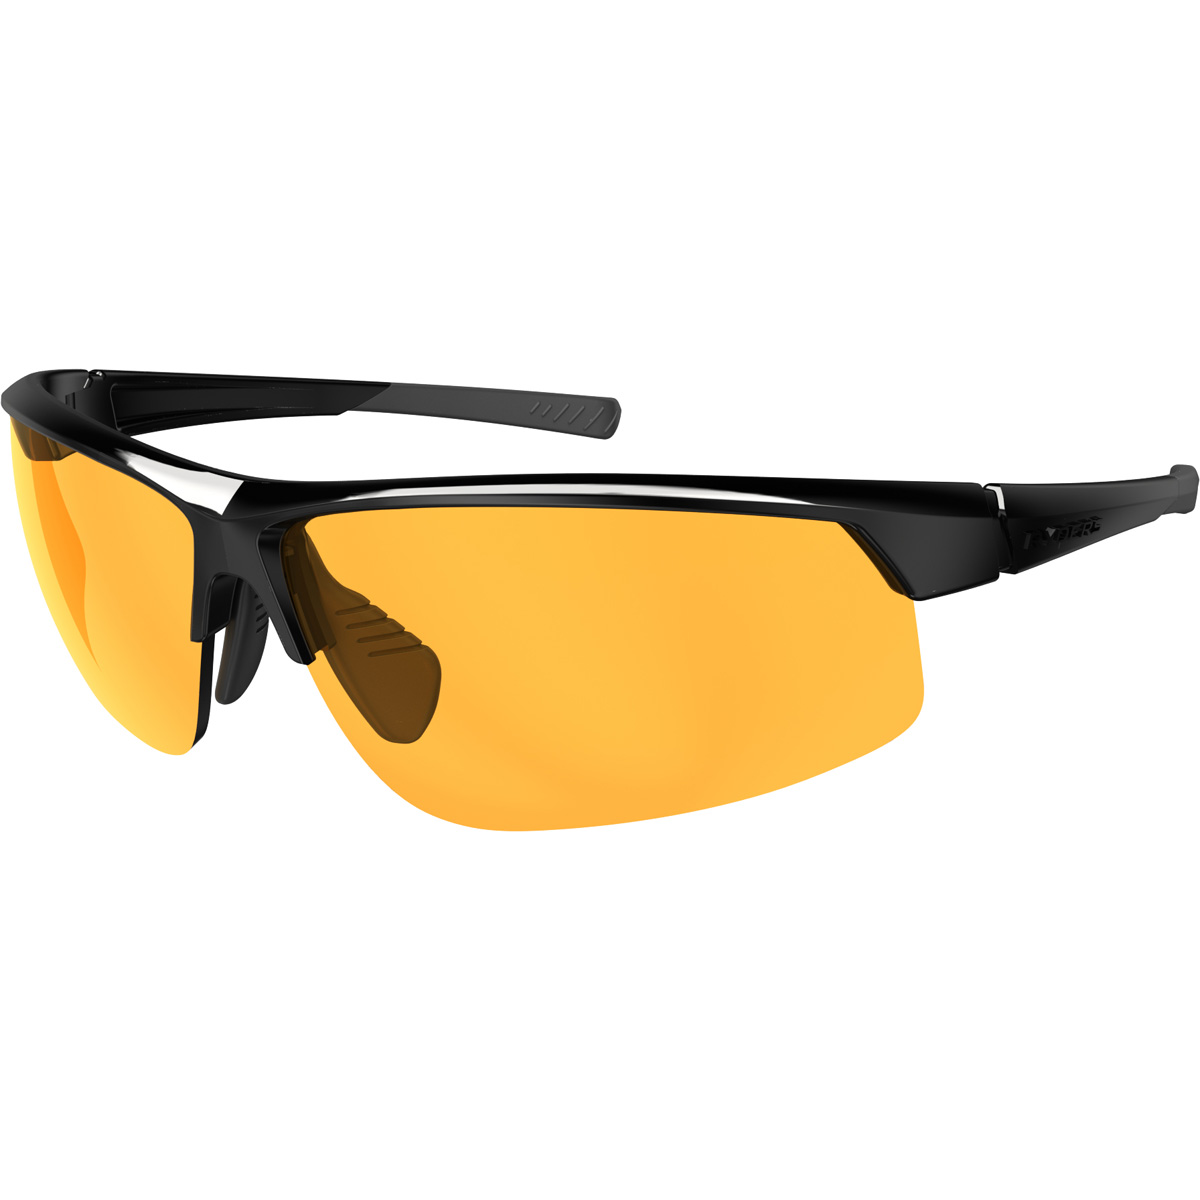 Saber Standard Sunglasses - image 1 of 2